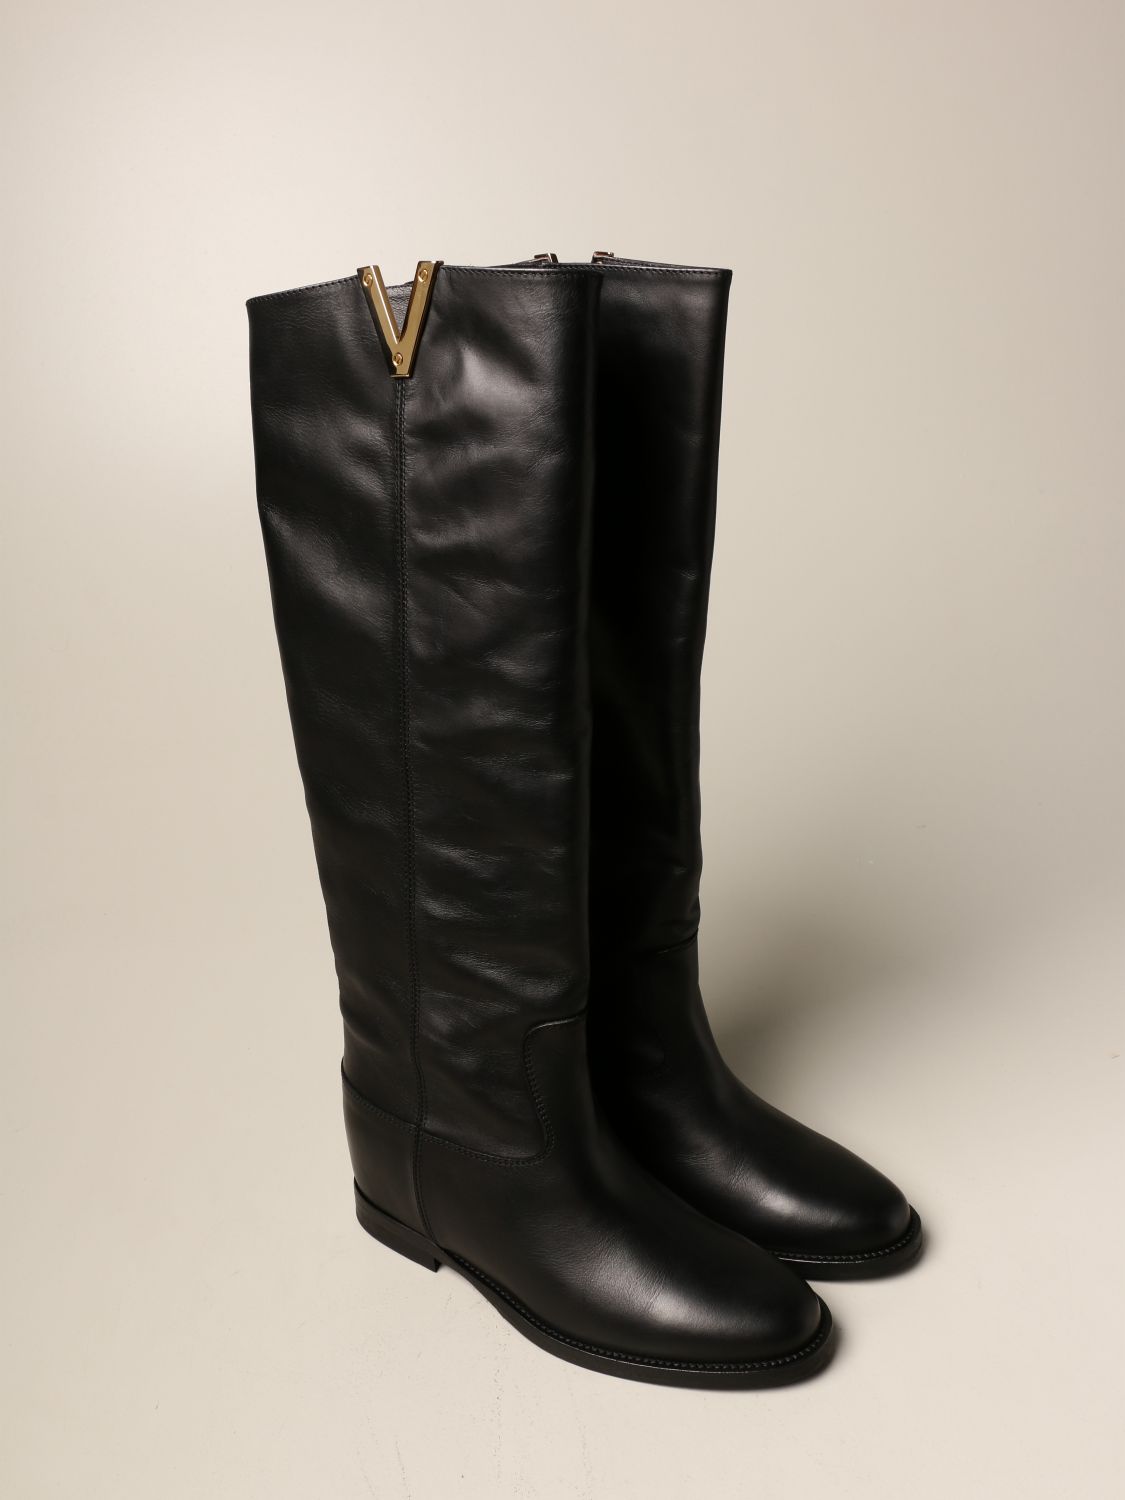 kousen omroeper ruilen VIA ROMA 15: Malibù boot in leather - Black | Via Roma 15 boots 2568 MALIBU  online on GIGLIO.COM